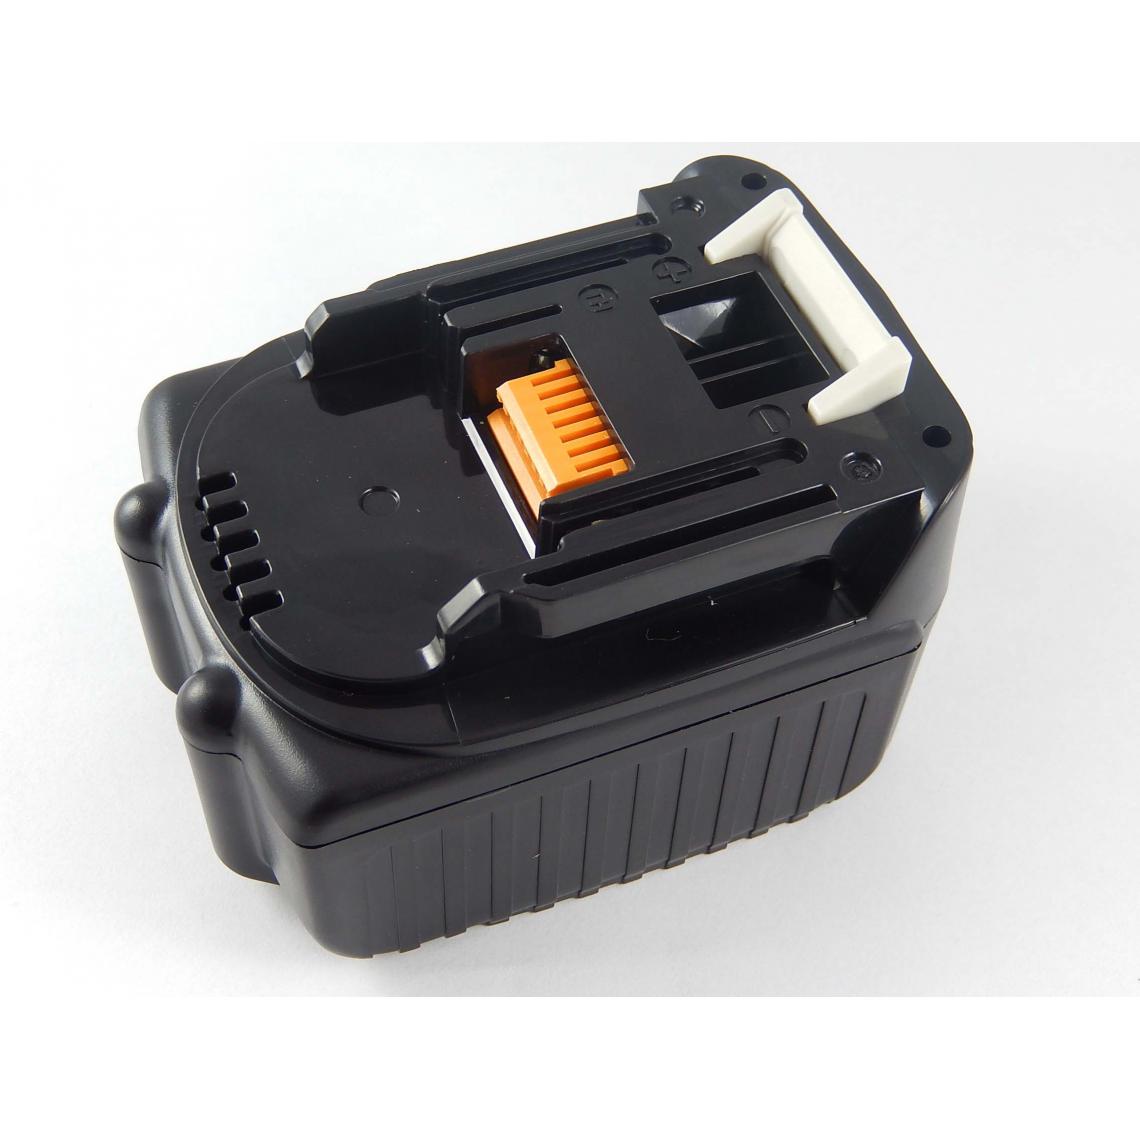 Vhbw - vhbw Batterie compatible avec Makita TD134DRFXP, TD134DRFXW, TL060DRF, TP130DRFX, TP131 outil électrique (2000mAh Li-ion 14,4 V) - Accessoires vissage, perçage